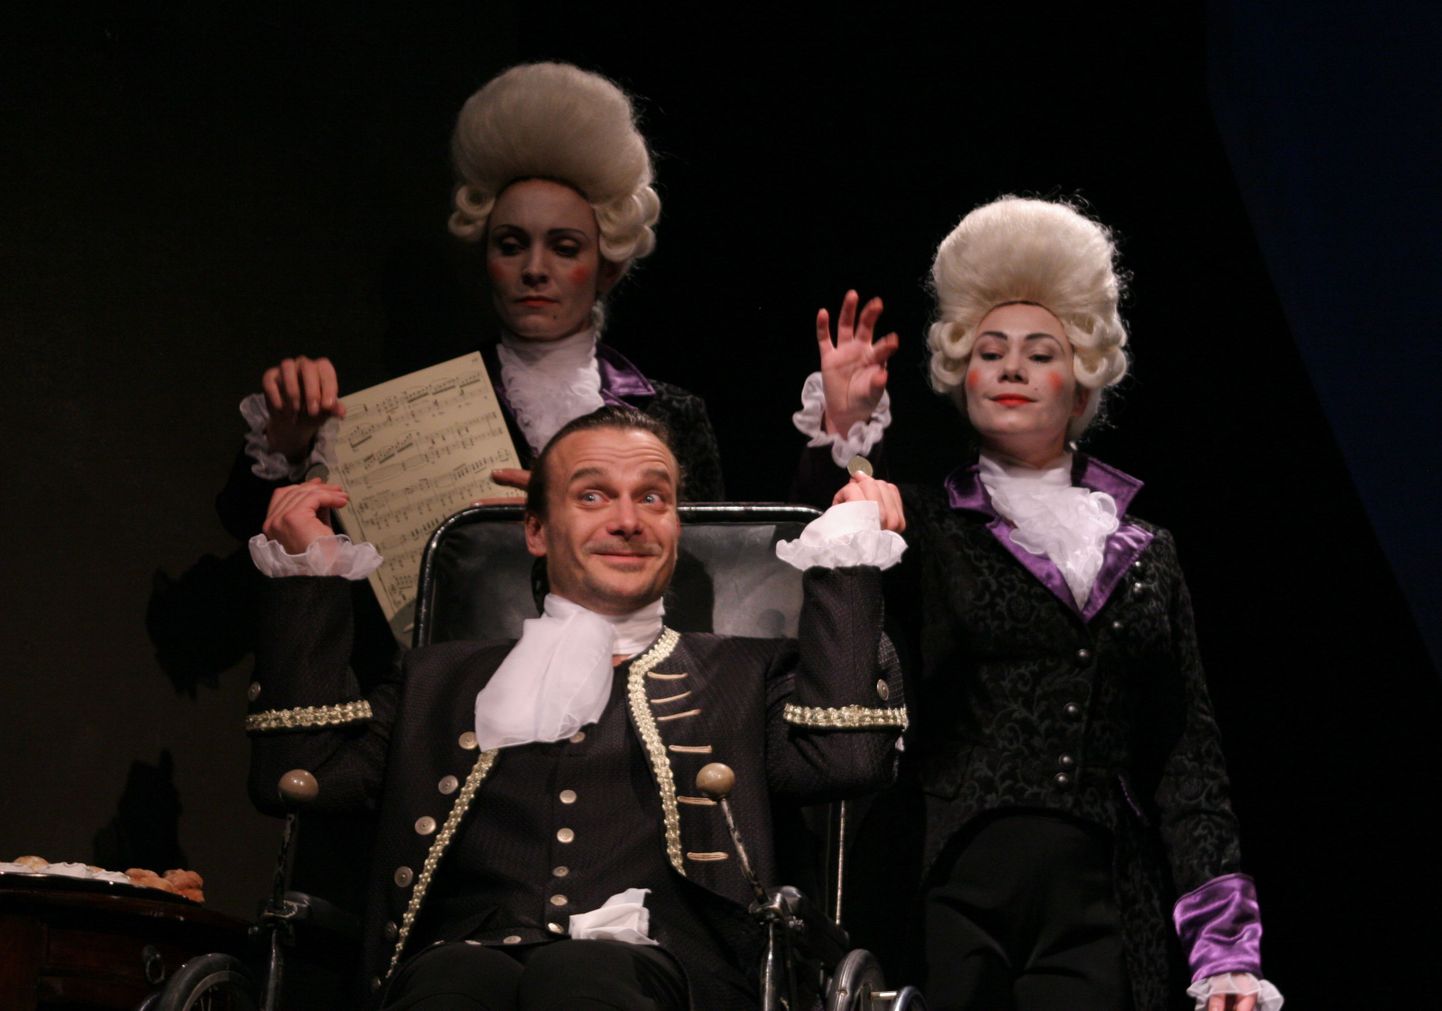 Stseen lavastusest «Amadeus», esiplaanil Salieri - Indrek Sammul, tema
taga Venticellod - Triinu Meriste ja Kata-Riina Luide.